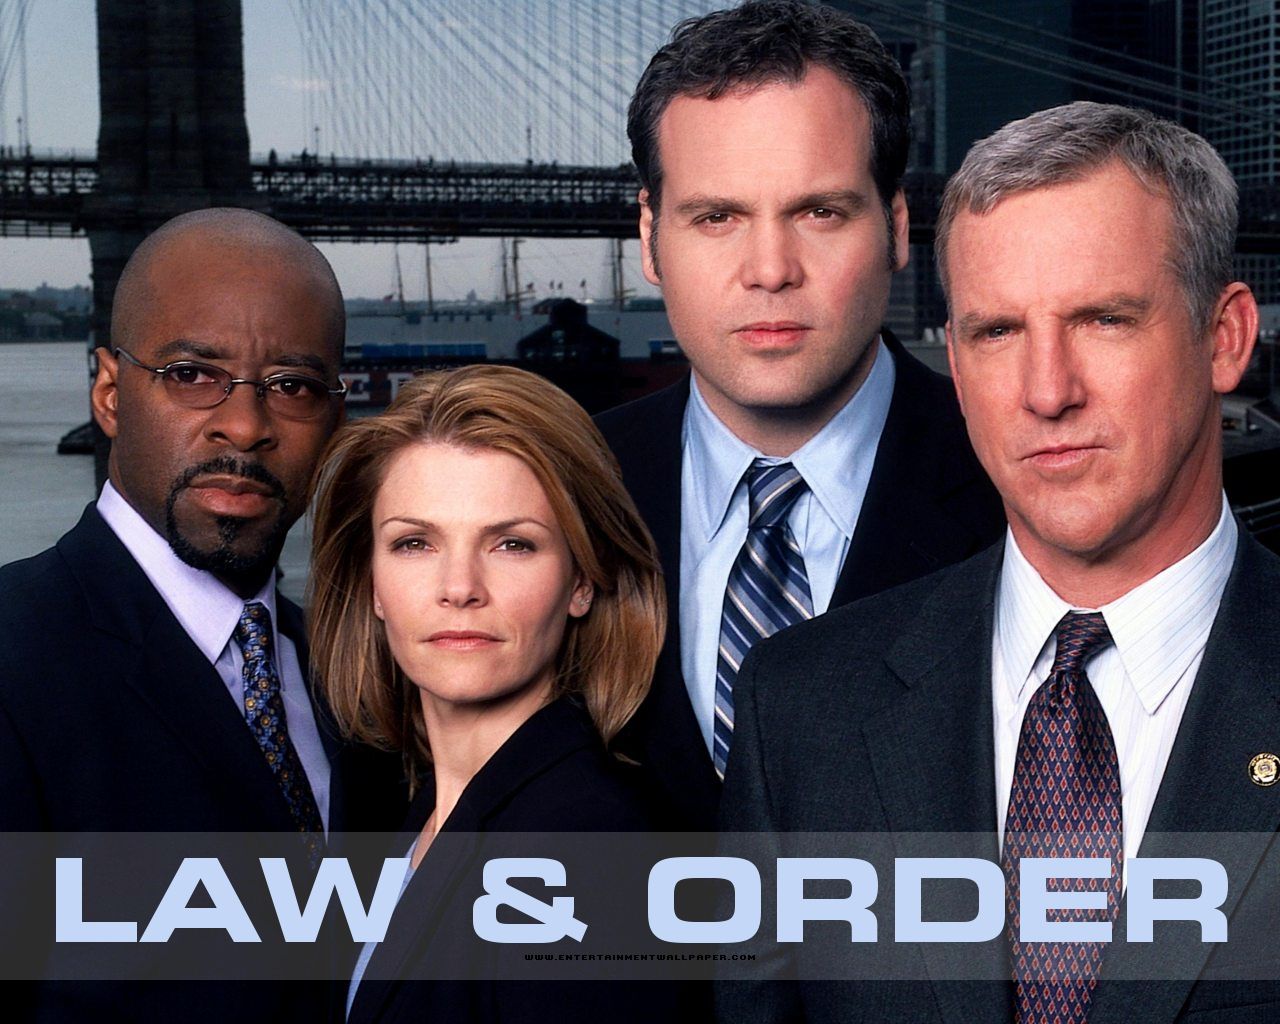 Law & Order: Criminal Intent #3